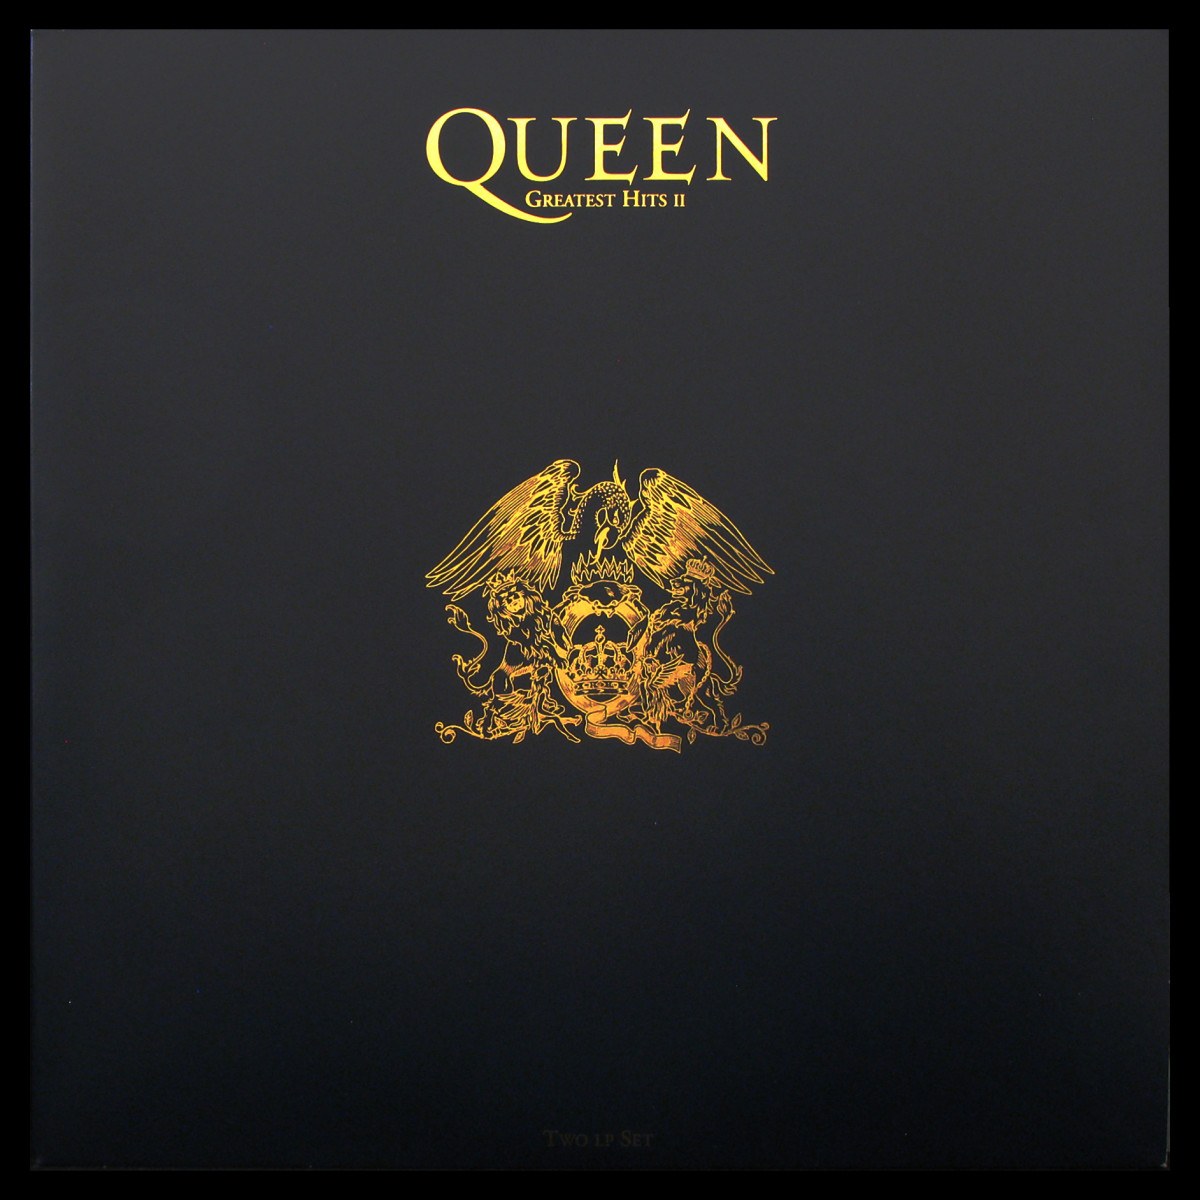 LP Queen — Greatest Hits II (2LP) фото